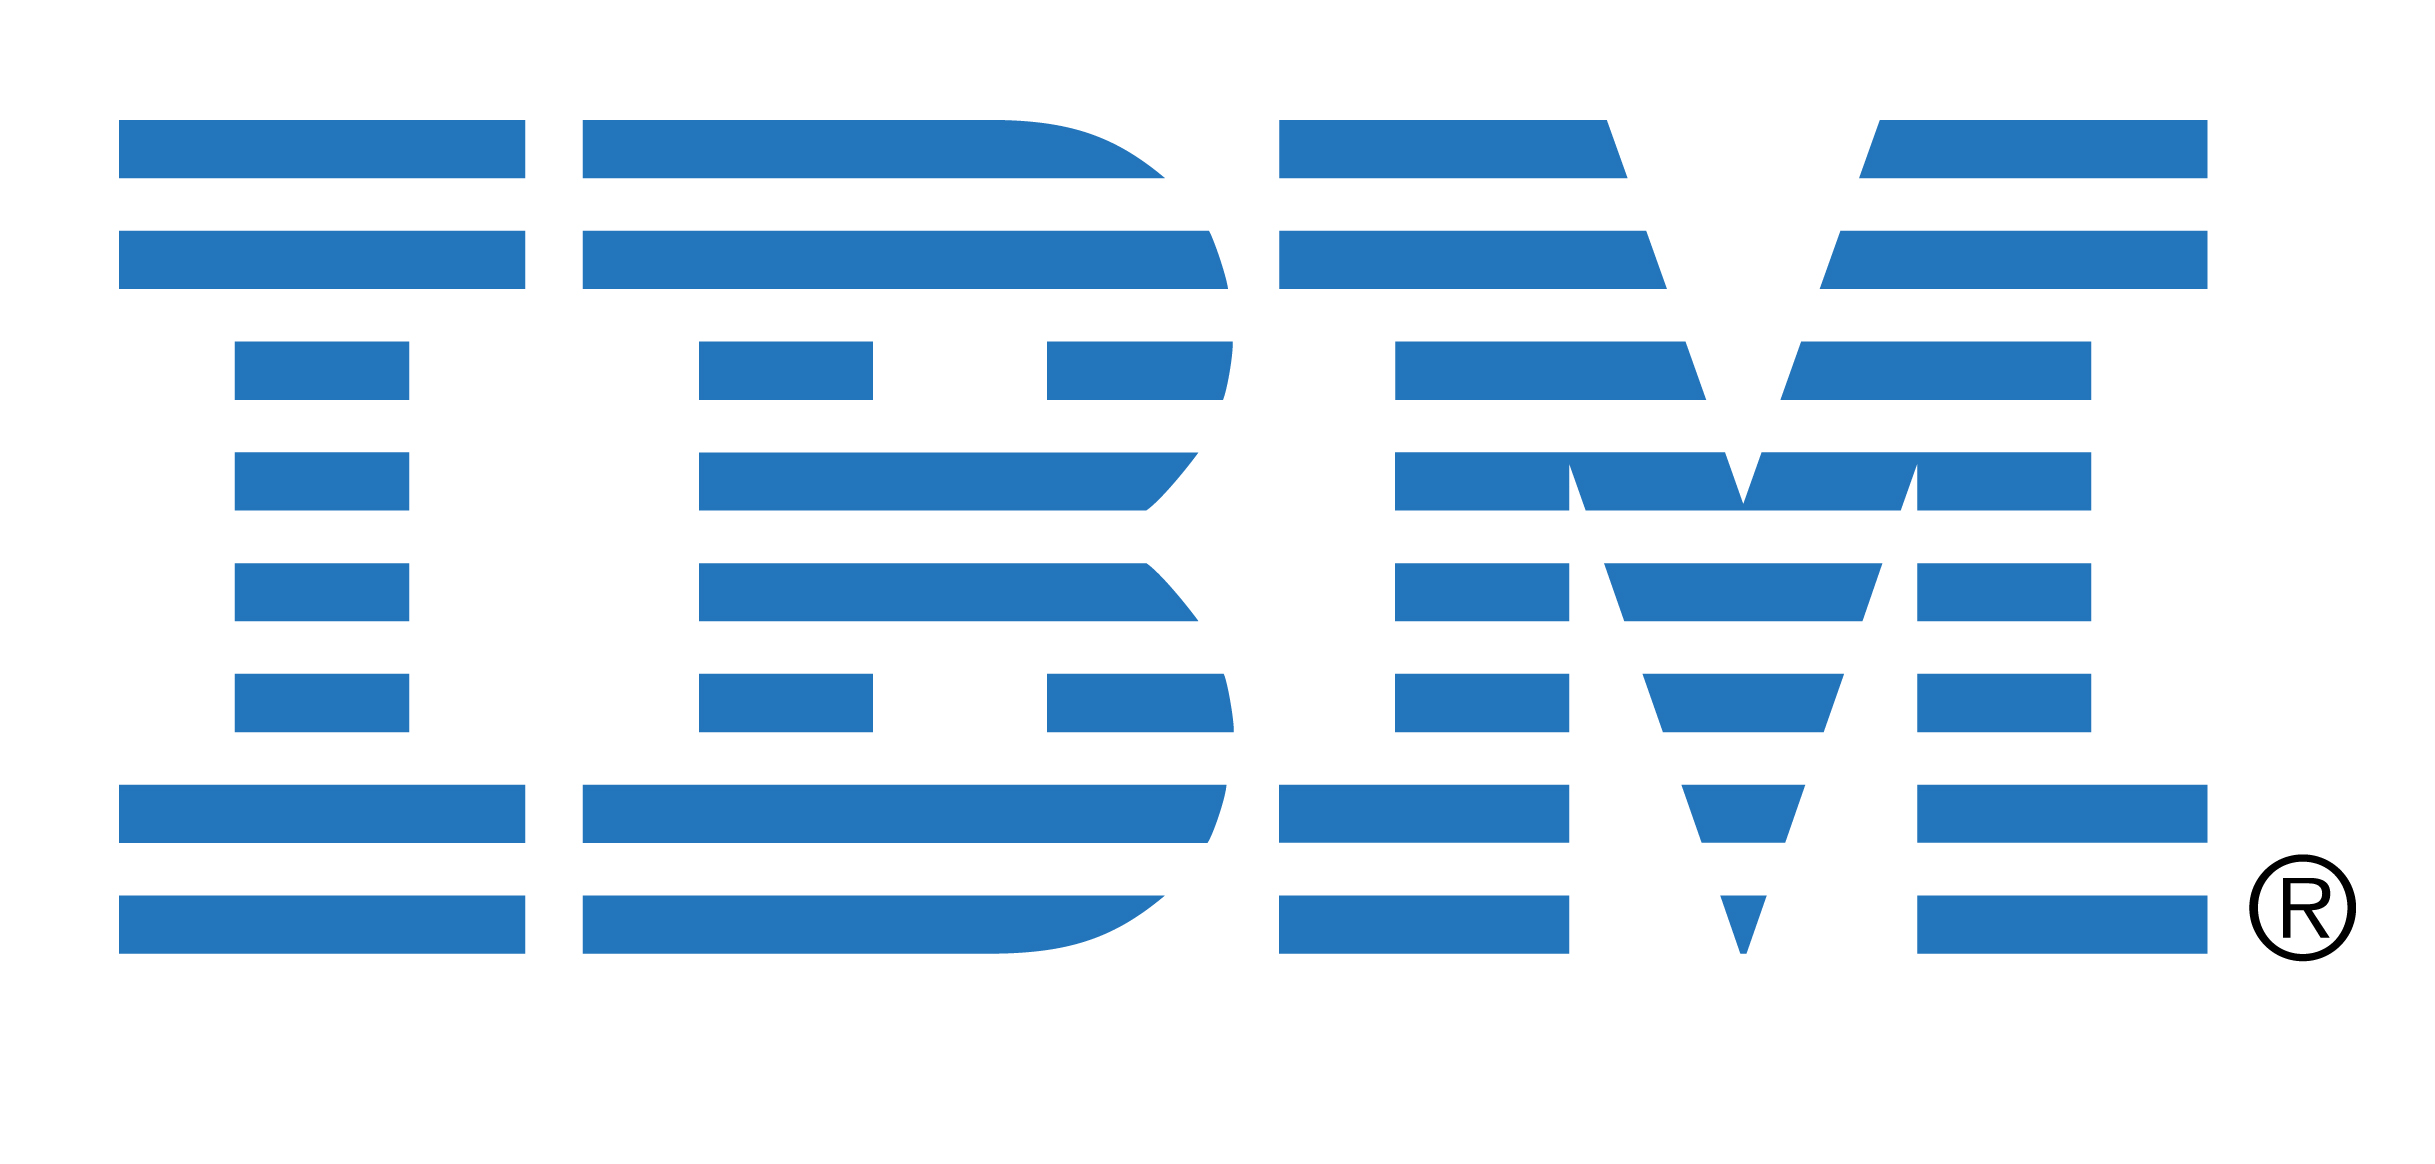 شرکت IBM رایانه‌های کوانتومی وارد بازار می کند